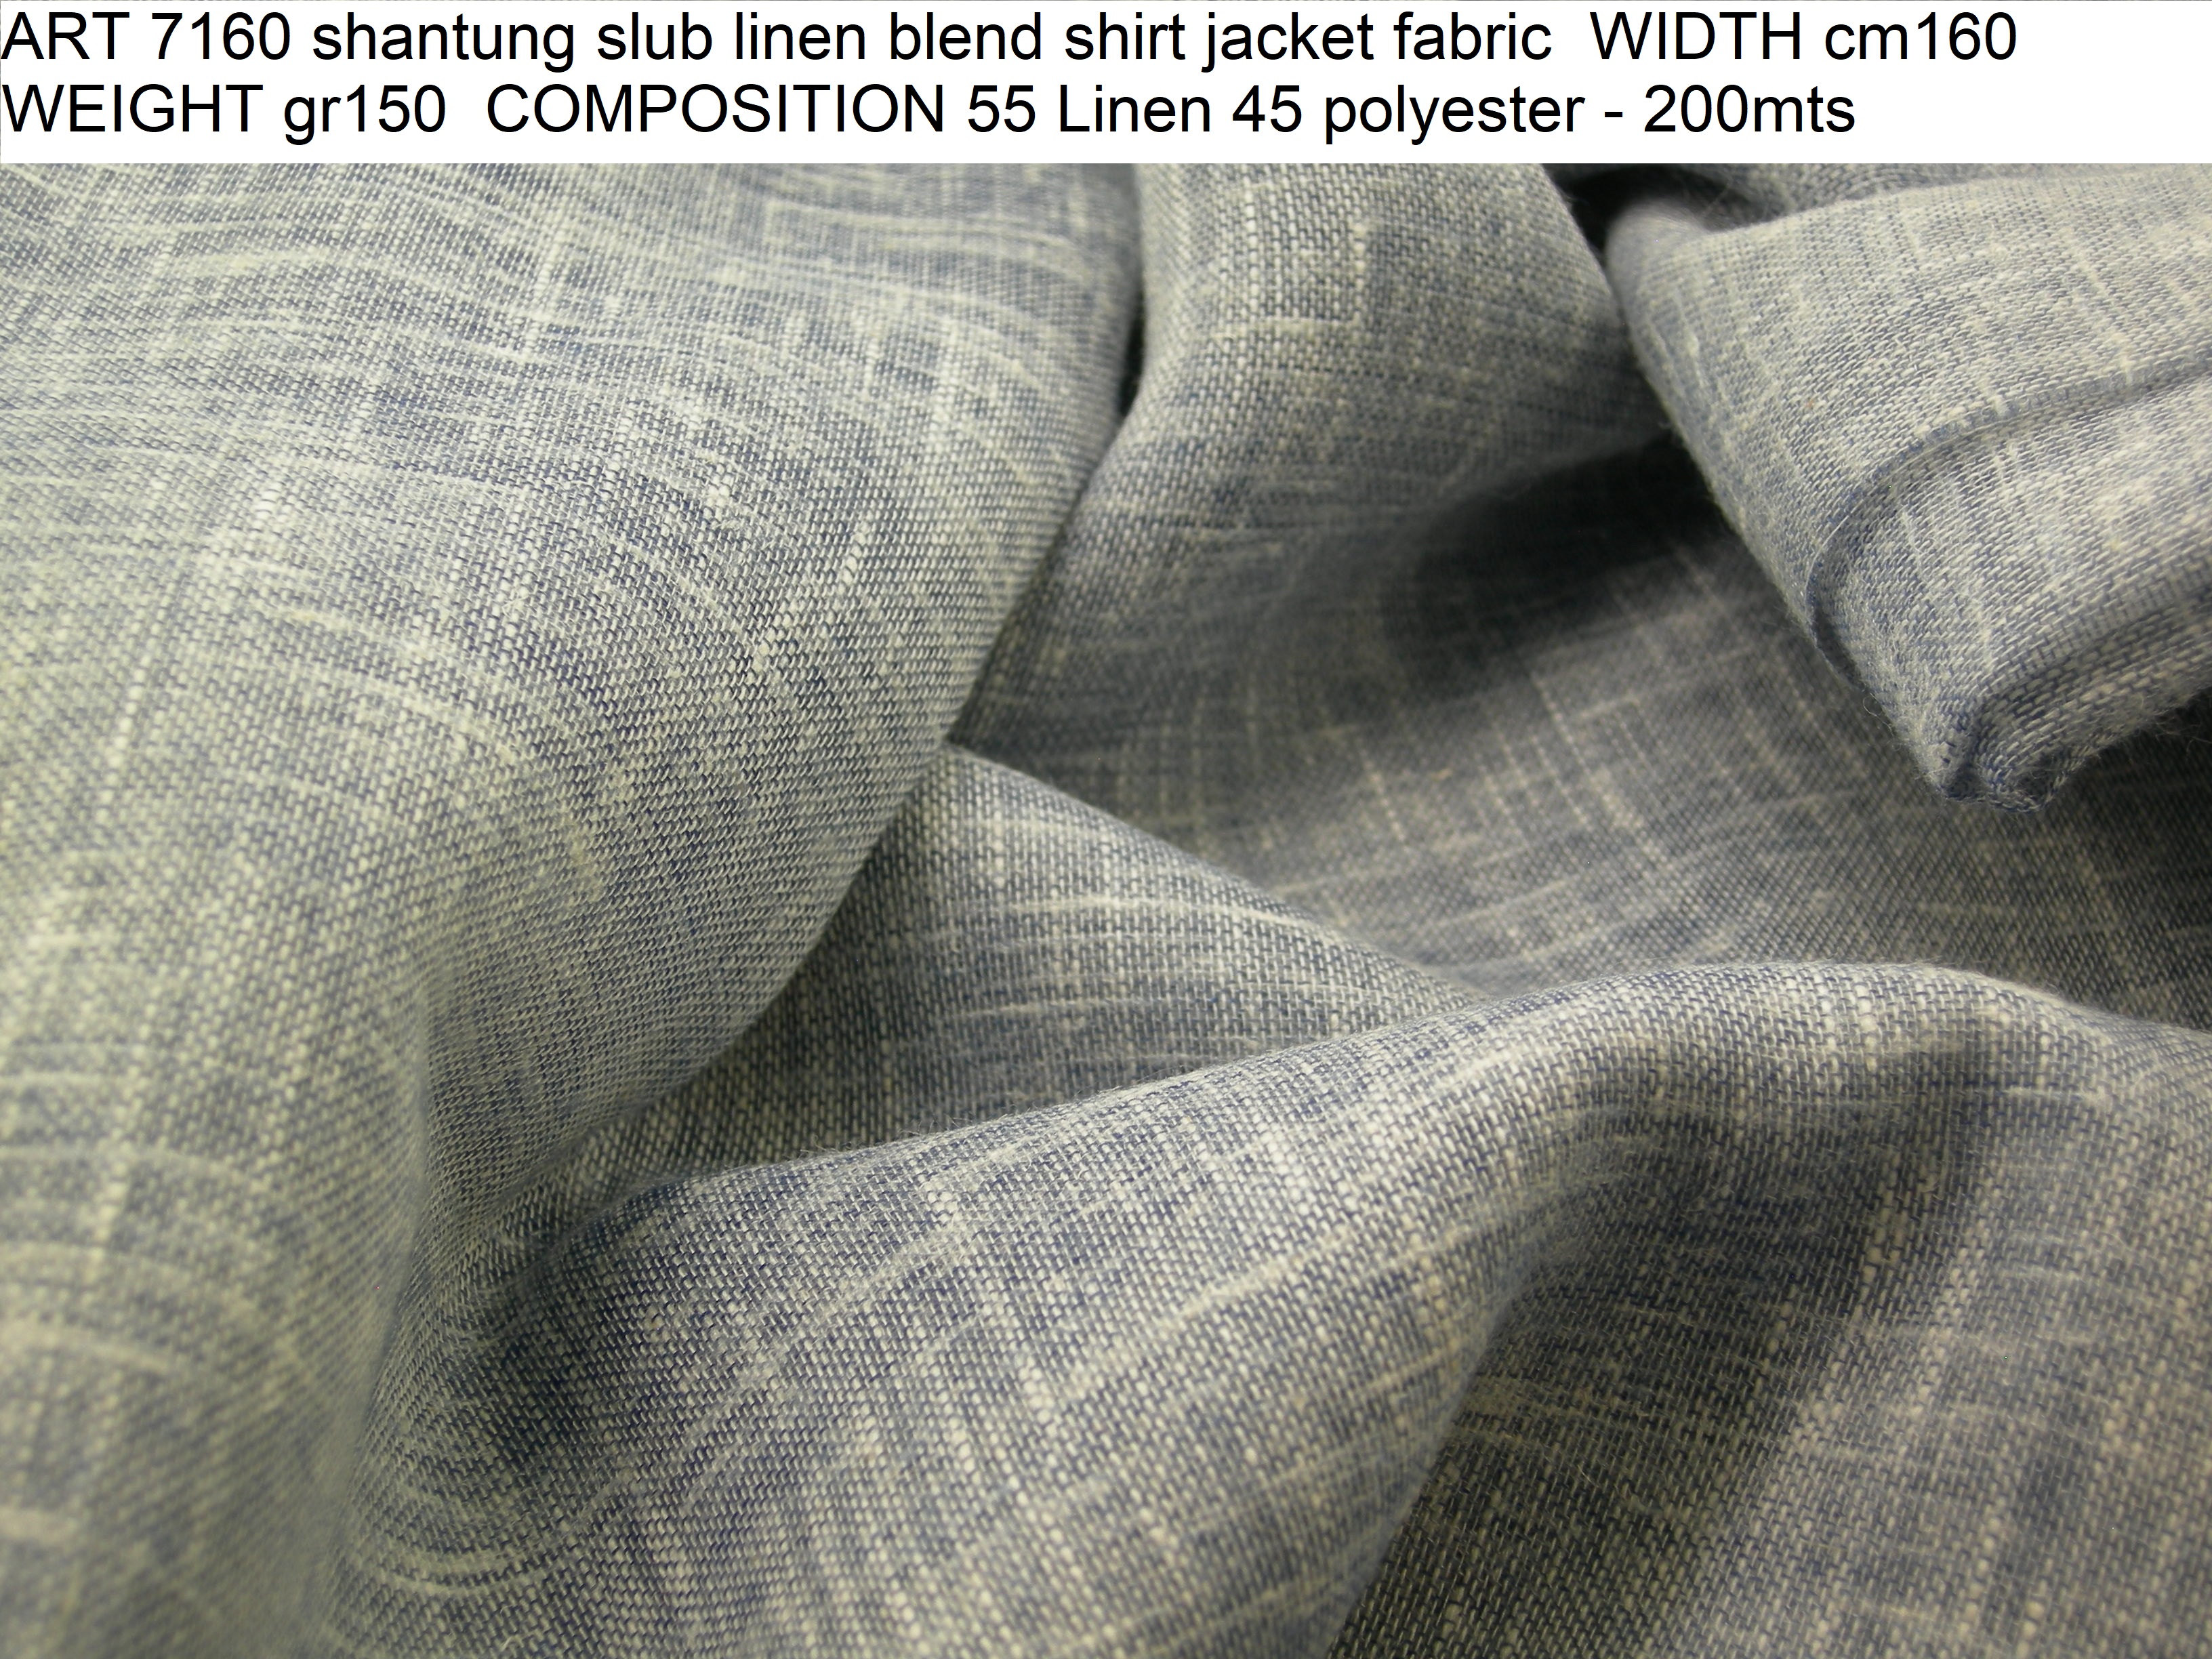 ART 7160 shantung slub linen blend shirt jacket fabric WIDTH cm160 WEIGHT gr150 COMPOSITION 55 Linen 45 polyester - 200mts